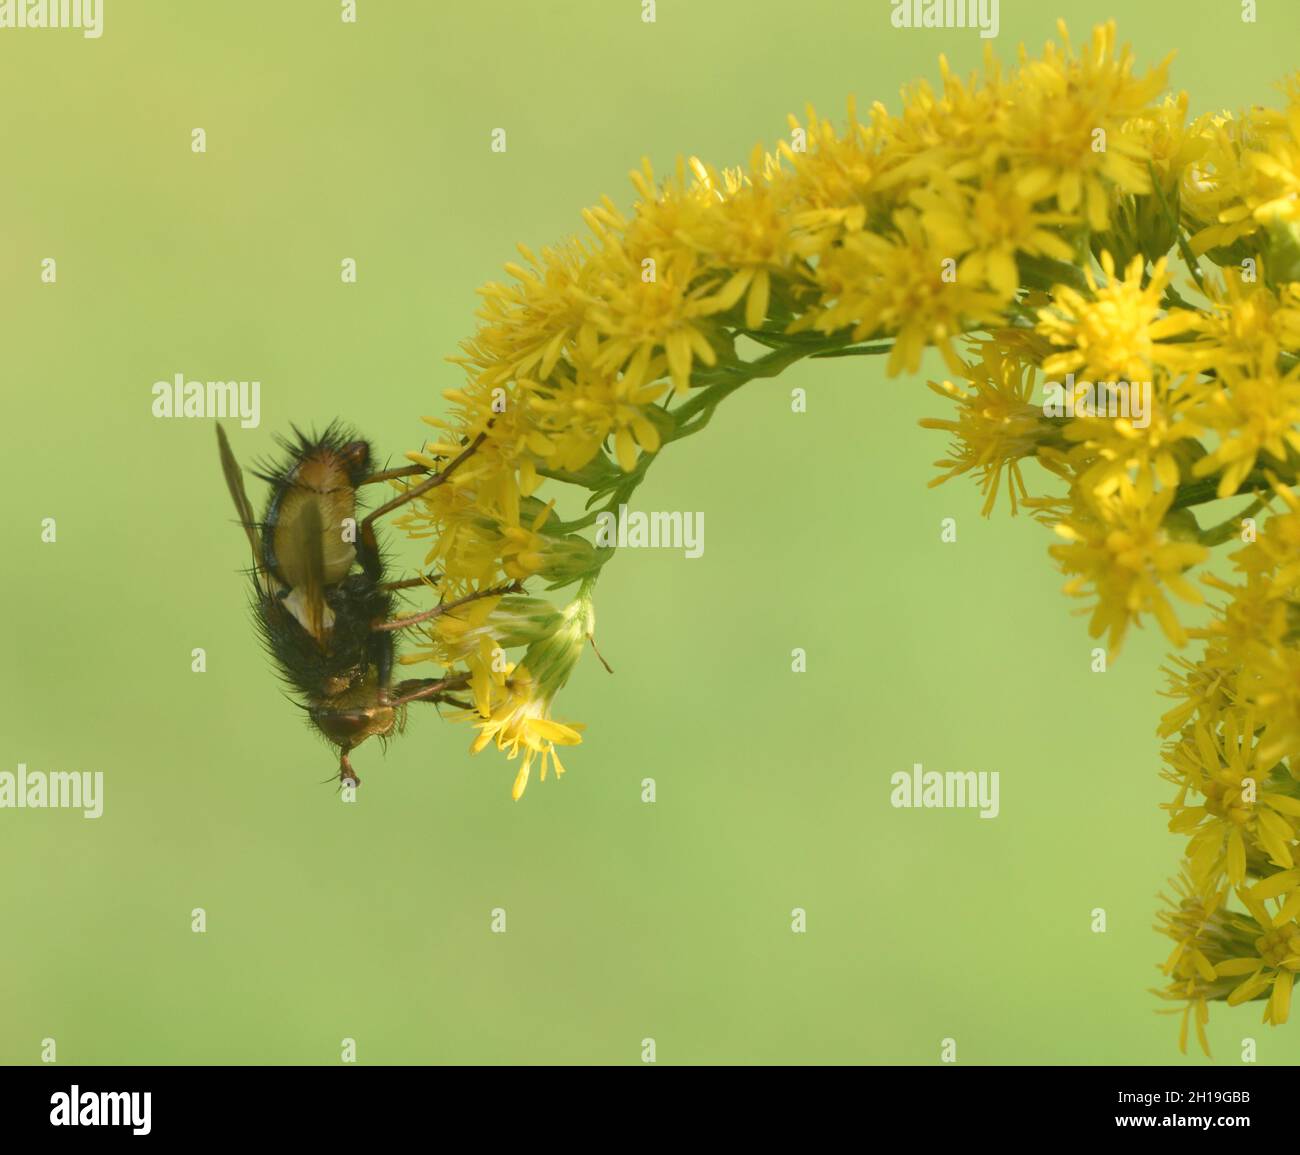 Una mosca si nutre di una canna d'oro o di una testa di fiore solidago. Foresta di Bedgebury, Kent, Regno Unito. Foto Stock